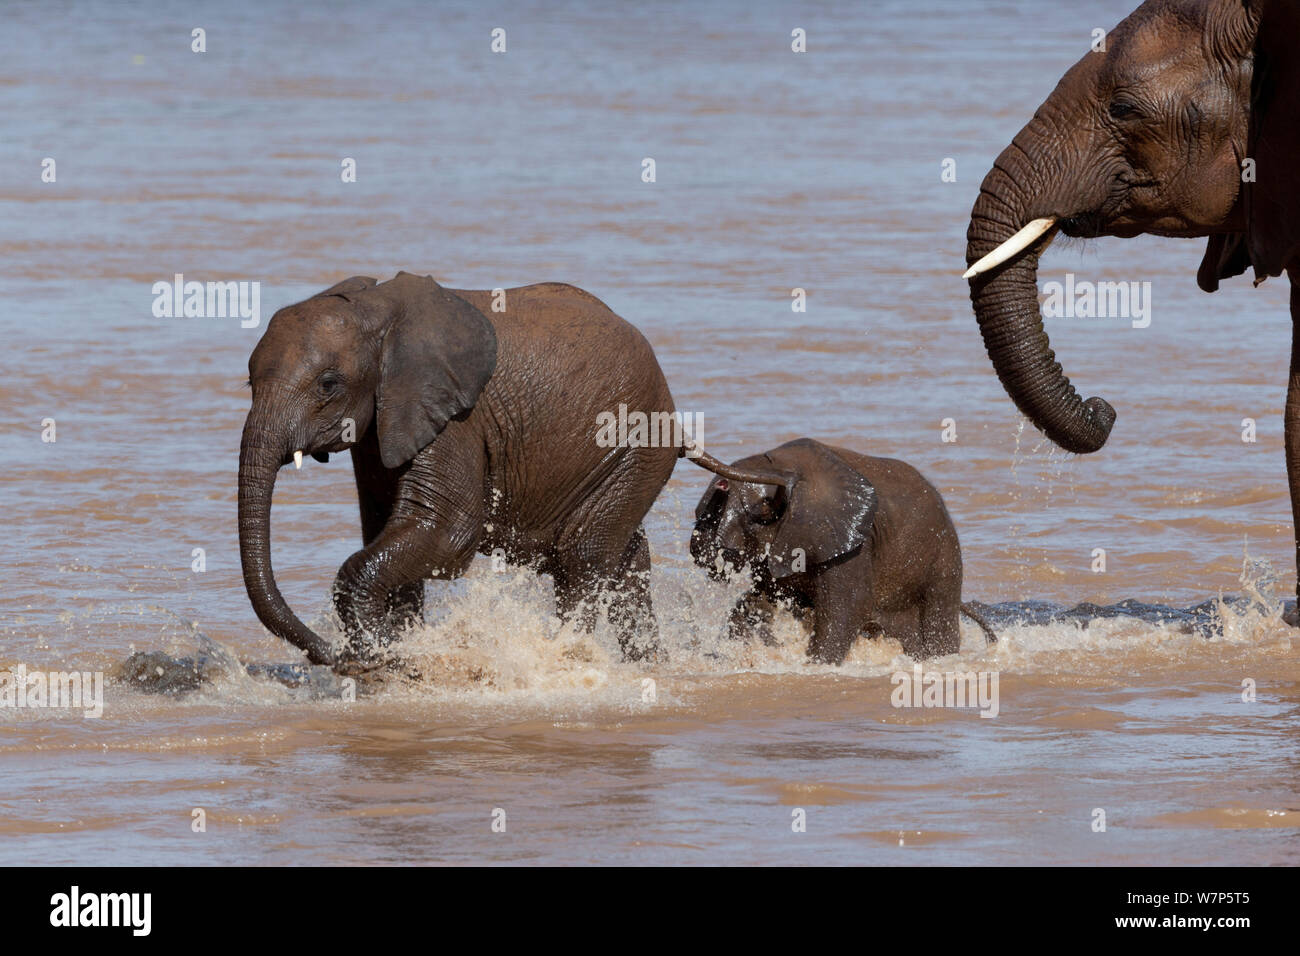 L'éléphant africain (Loxodonta africana), la mère et ses deux jeunes dans le fleuve Ewaso Ngiro. Samburu game reserve, Kenya. Banque D'Images